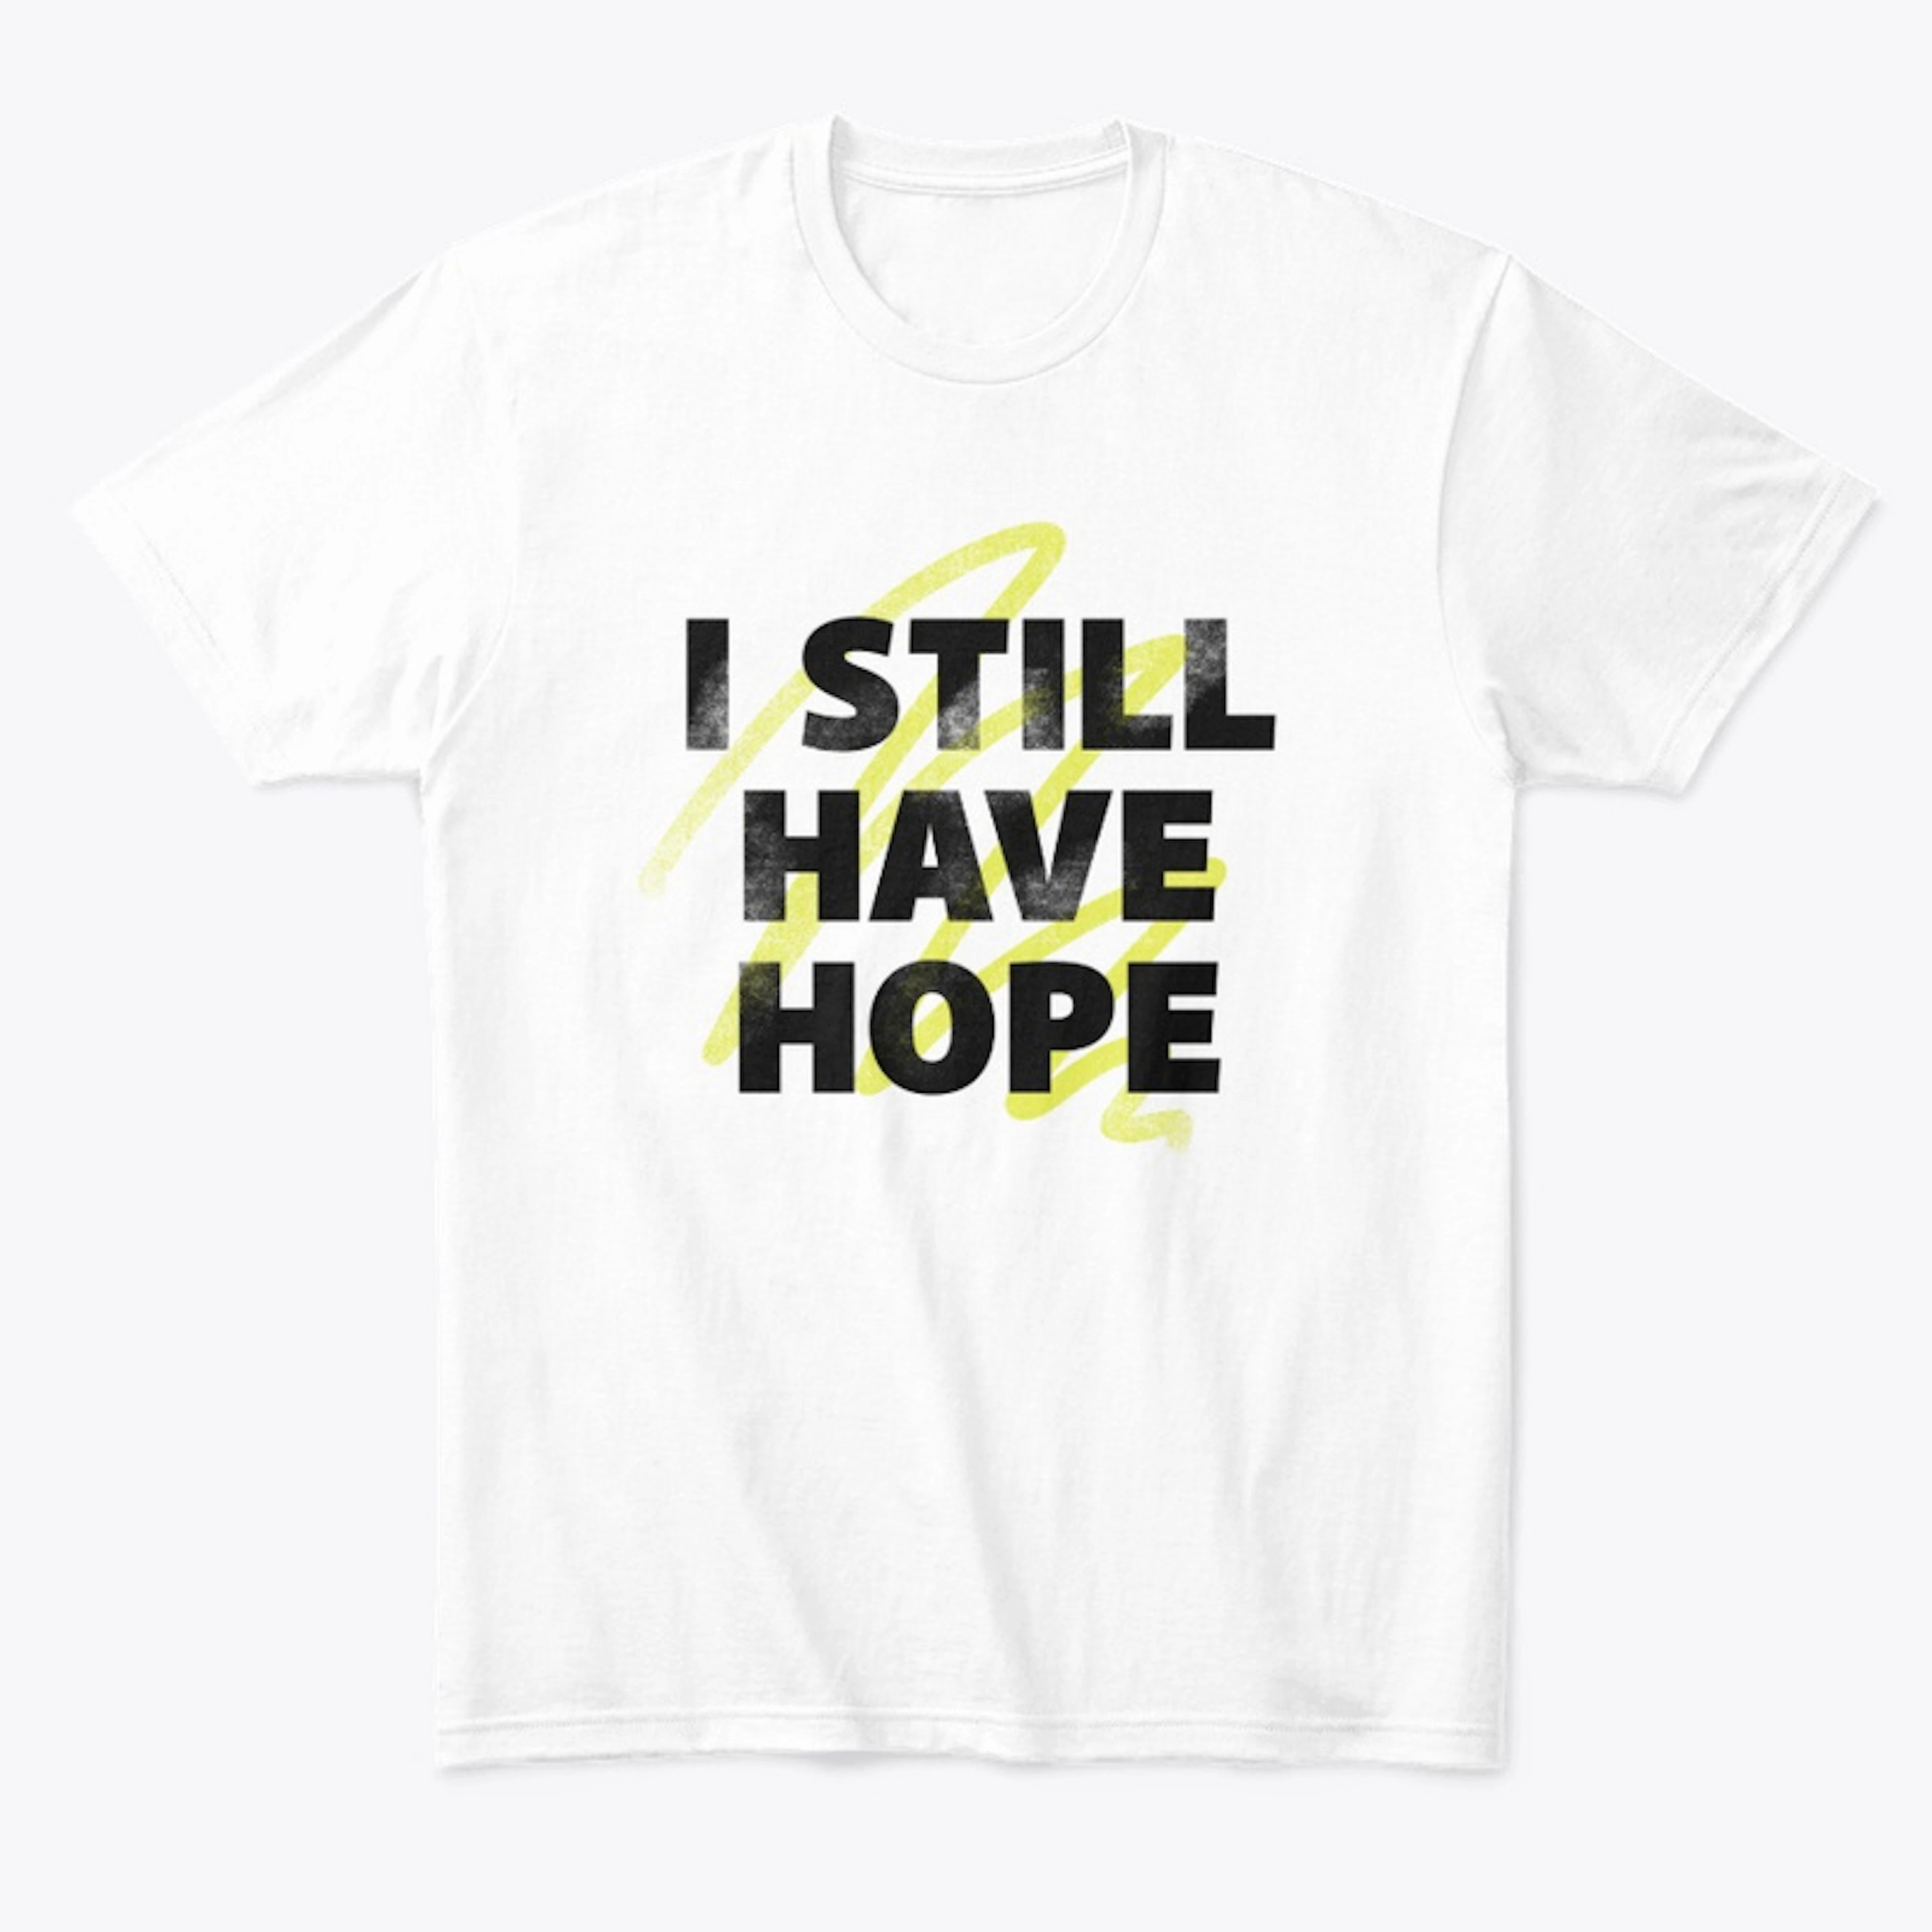 "I Still Have Hope"